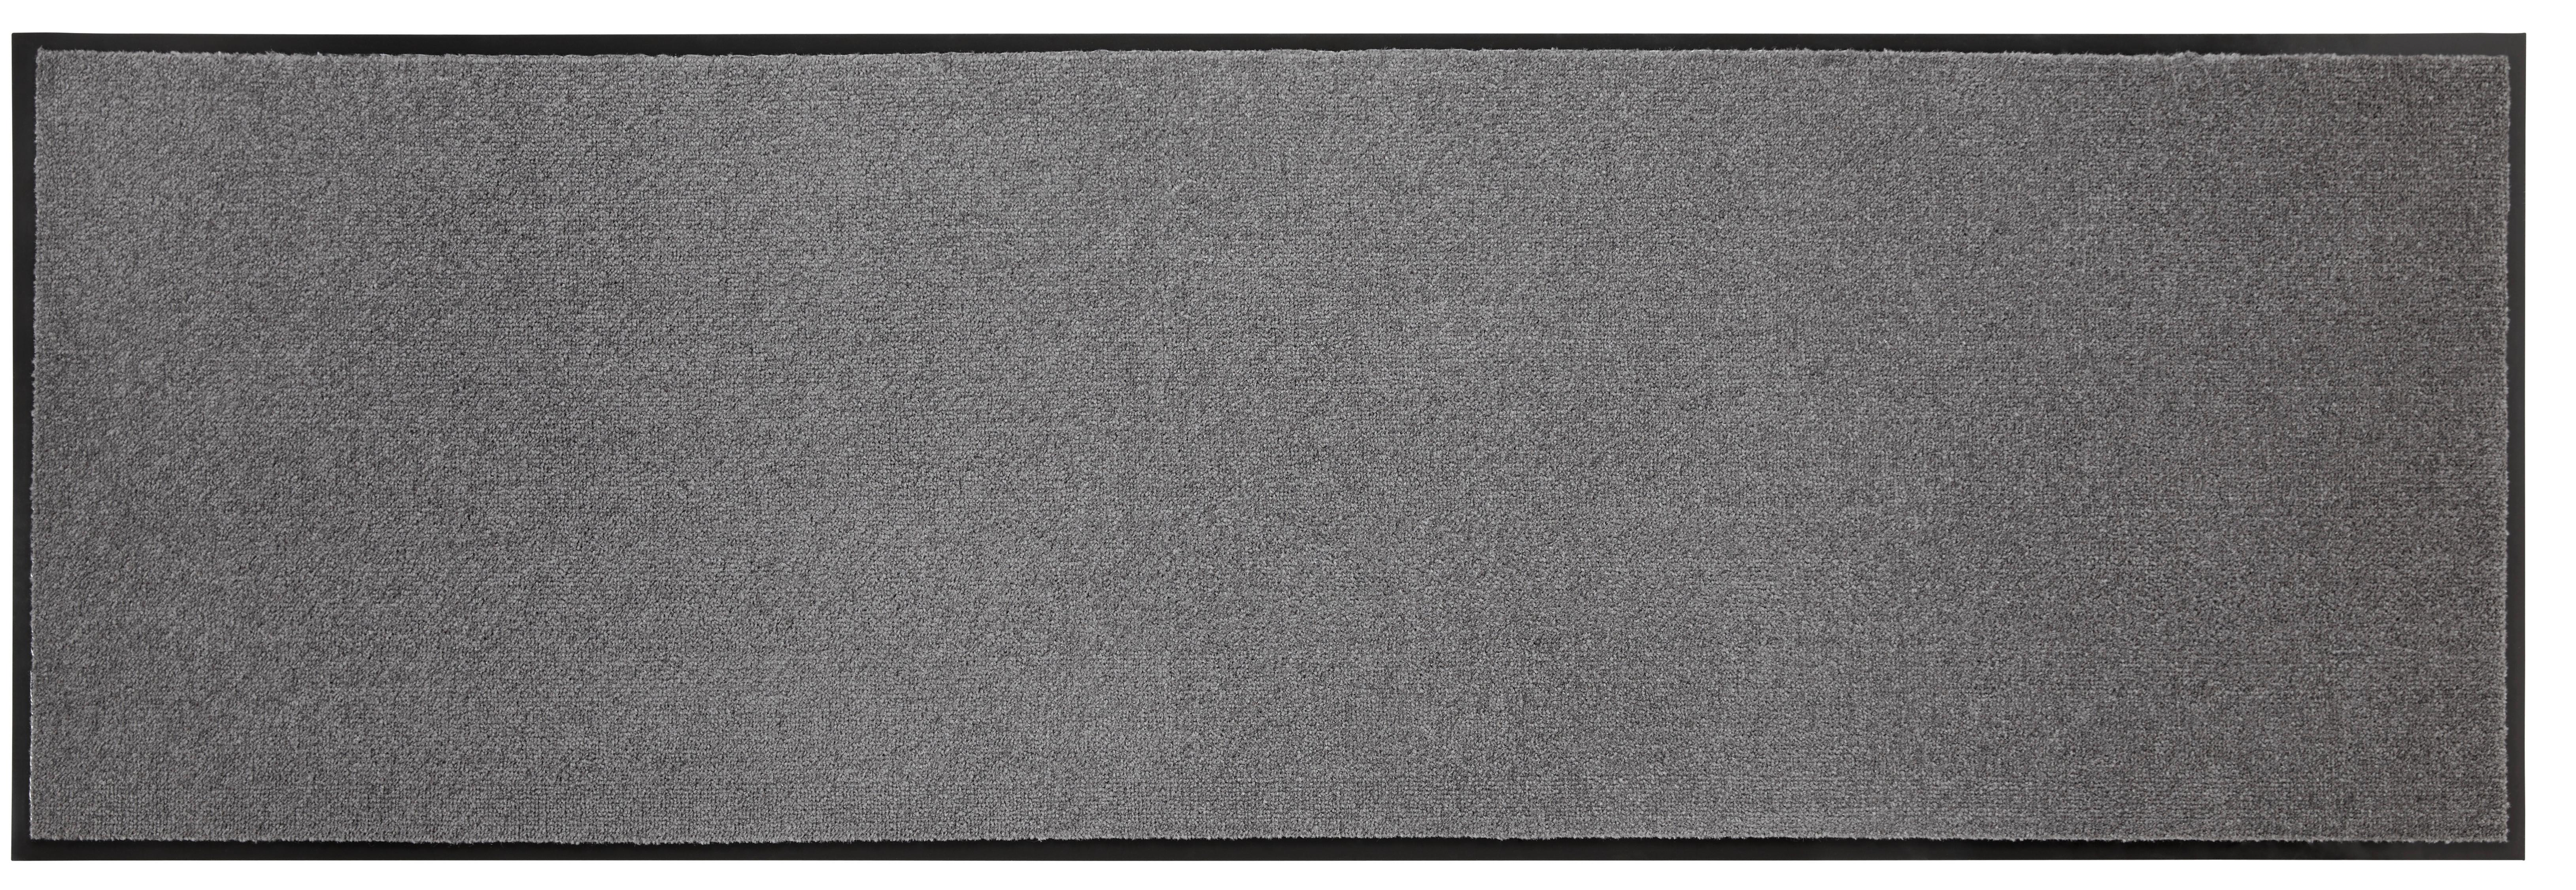 Predpražnik Eton 4 - antracit, Konvencionalno, tekstil (60/180cm) - Modern Living